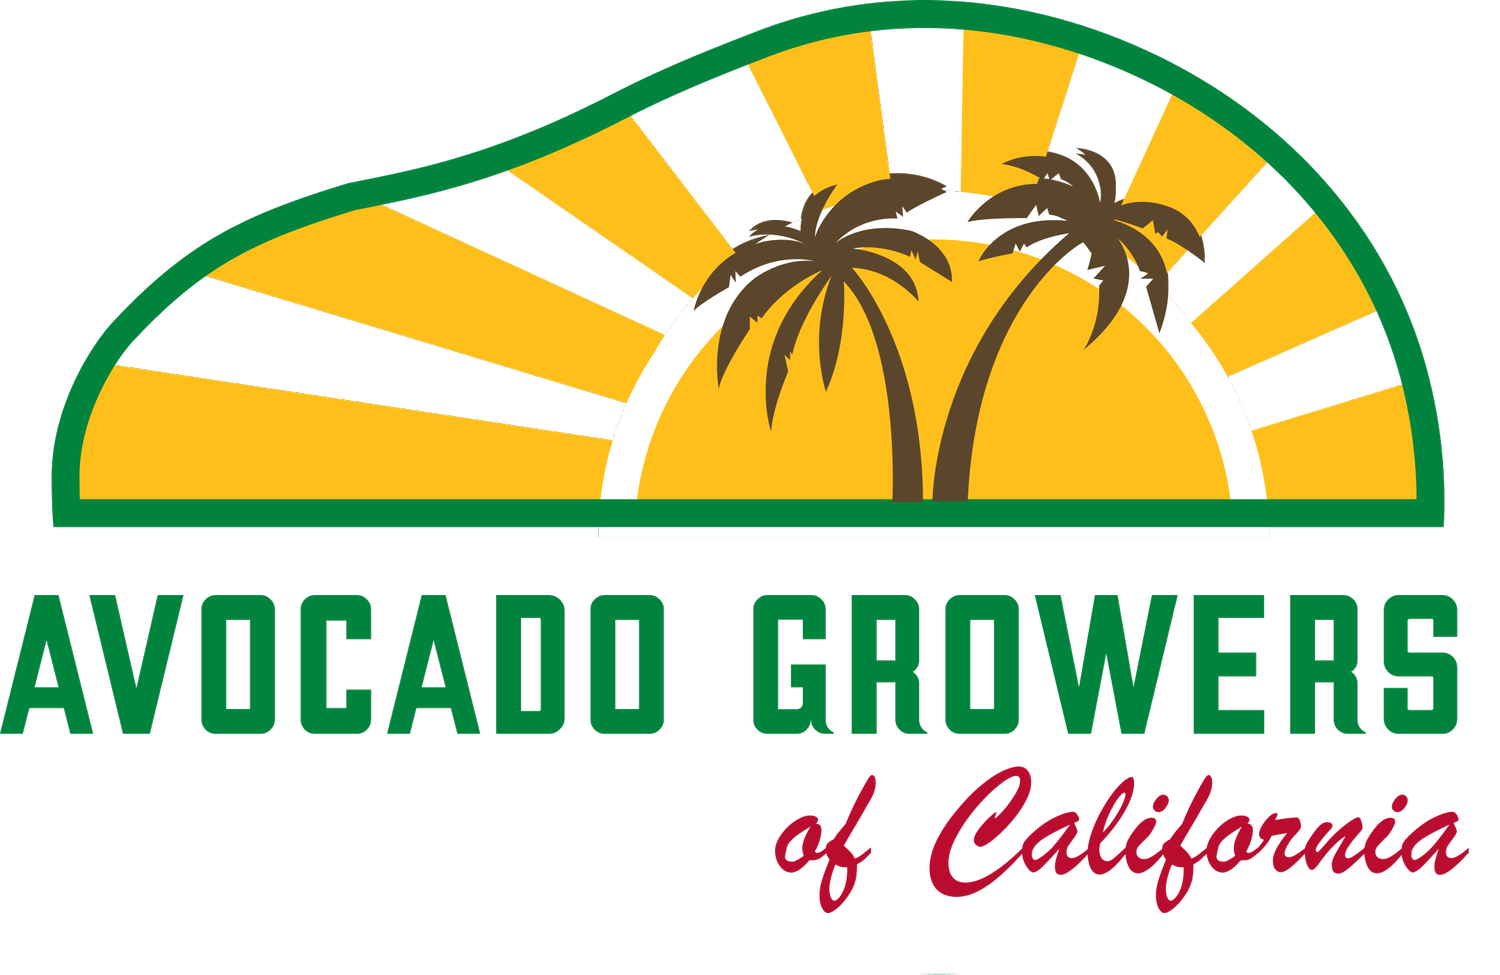 Avocado Growers of California